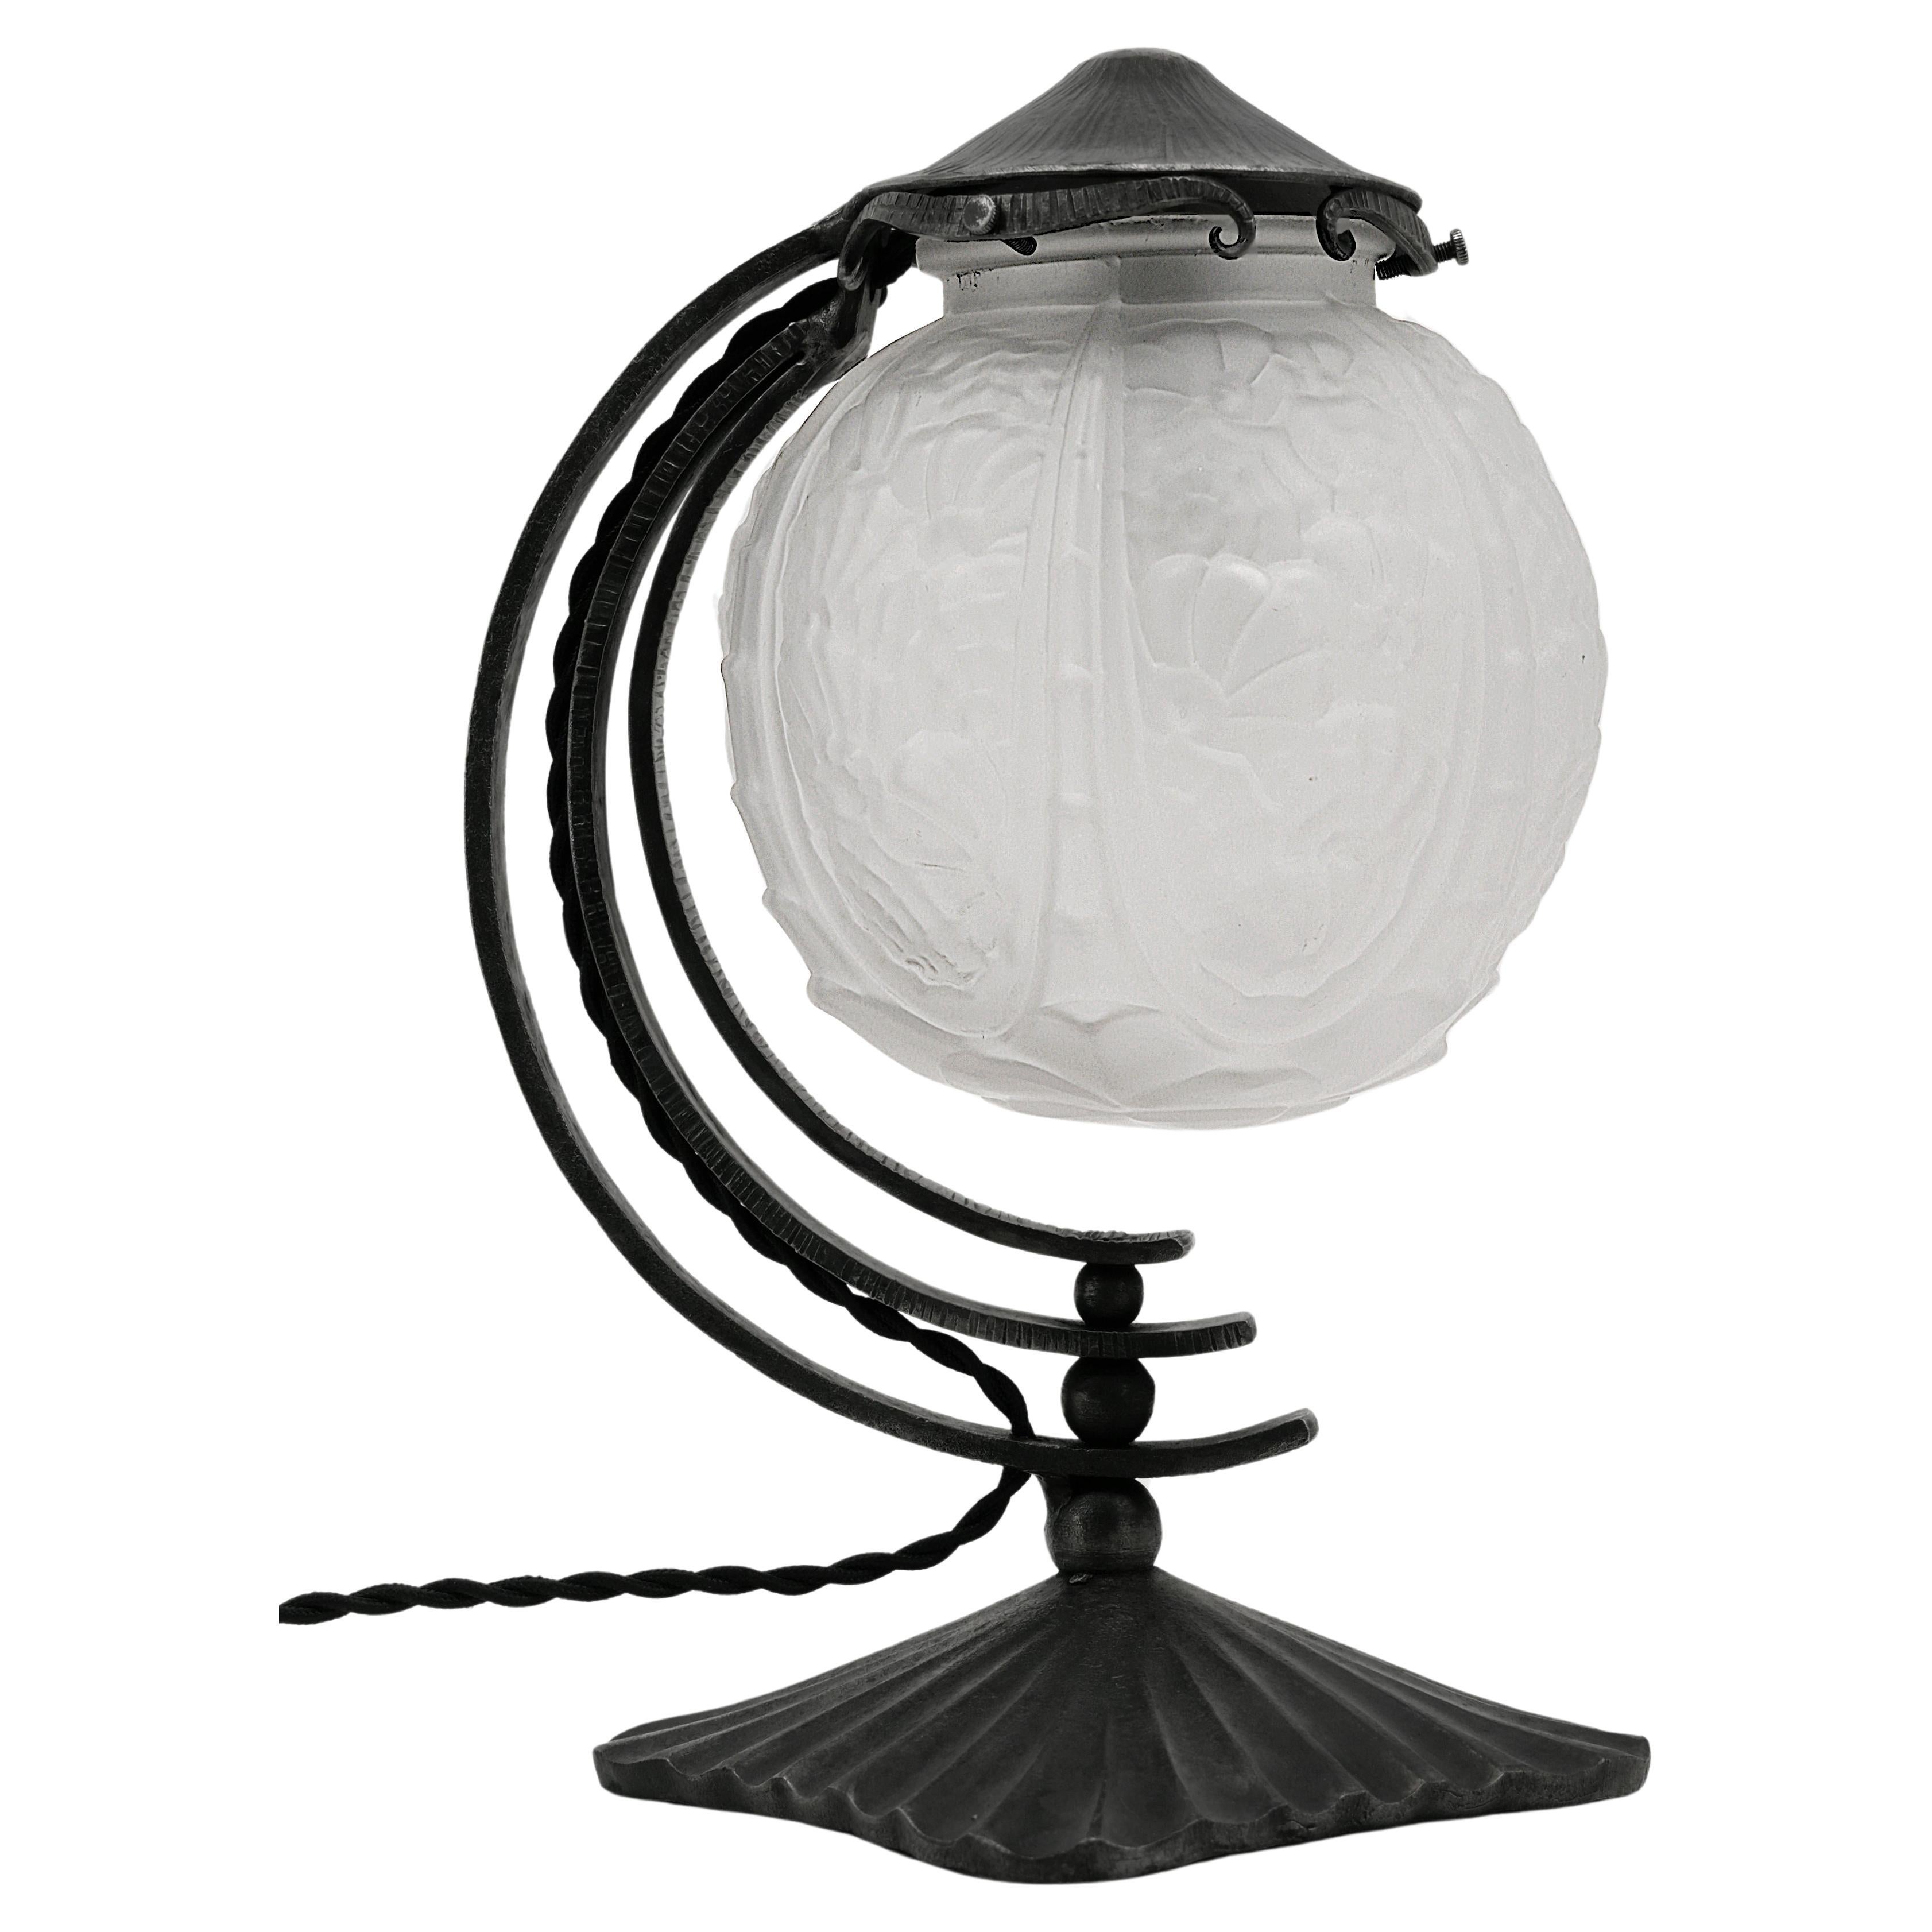 Molded Cherrier & Besnus French Art Deco Table Lamp, Ca.1925 For Sale